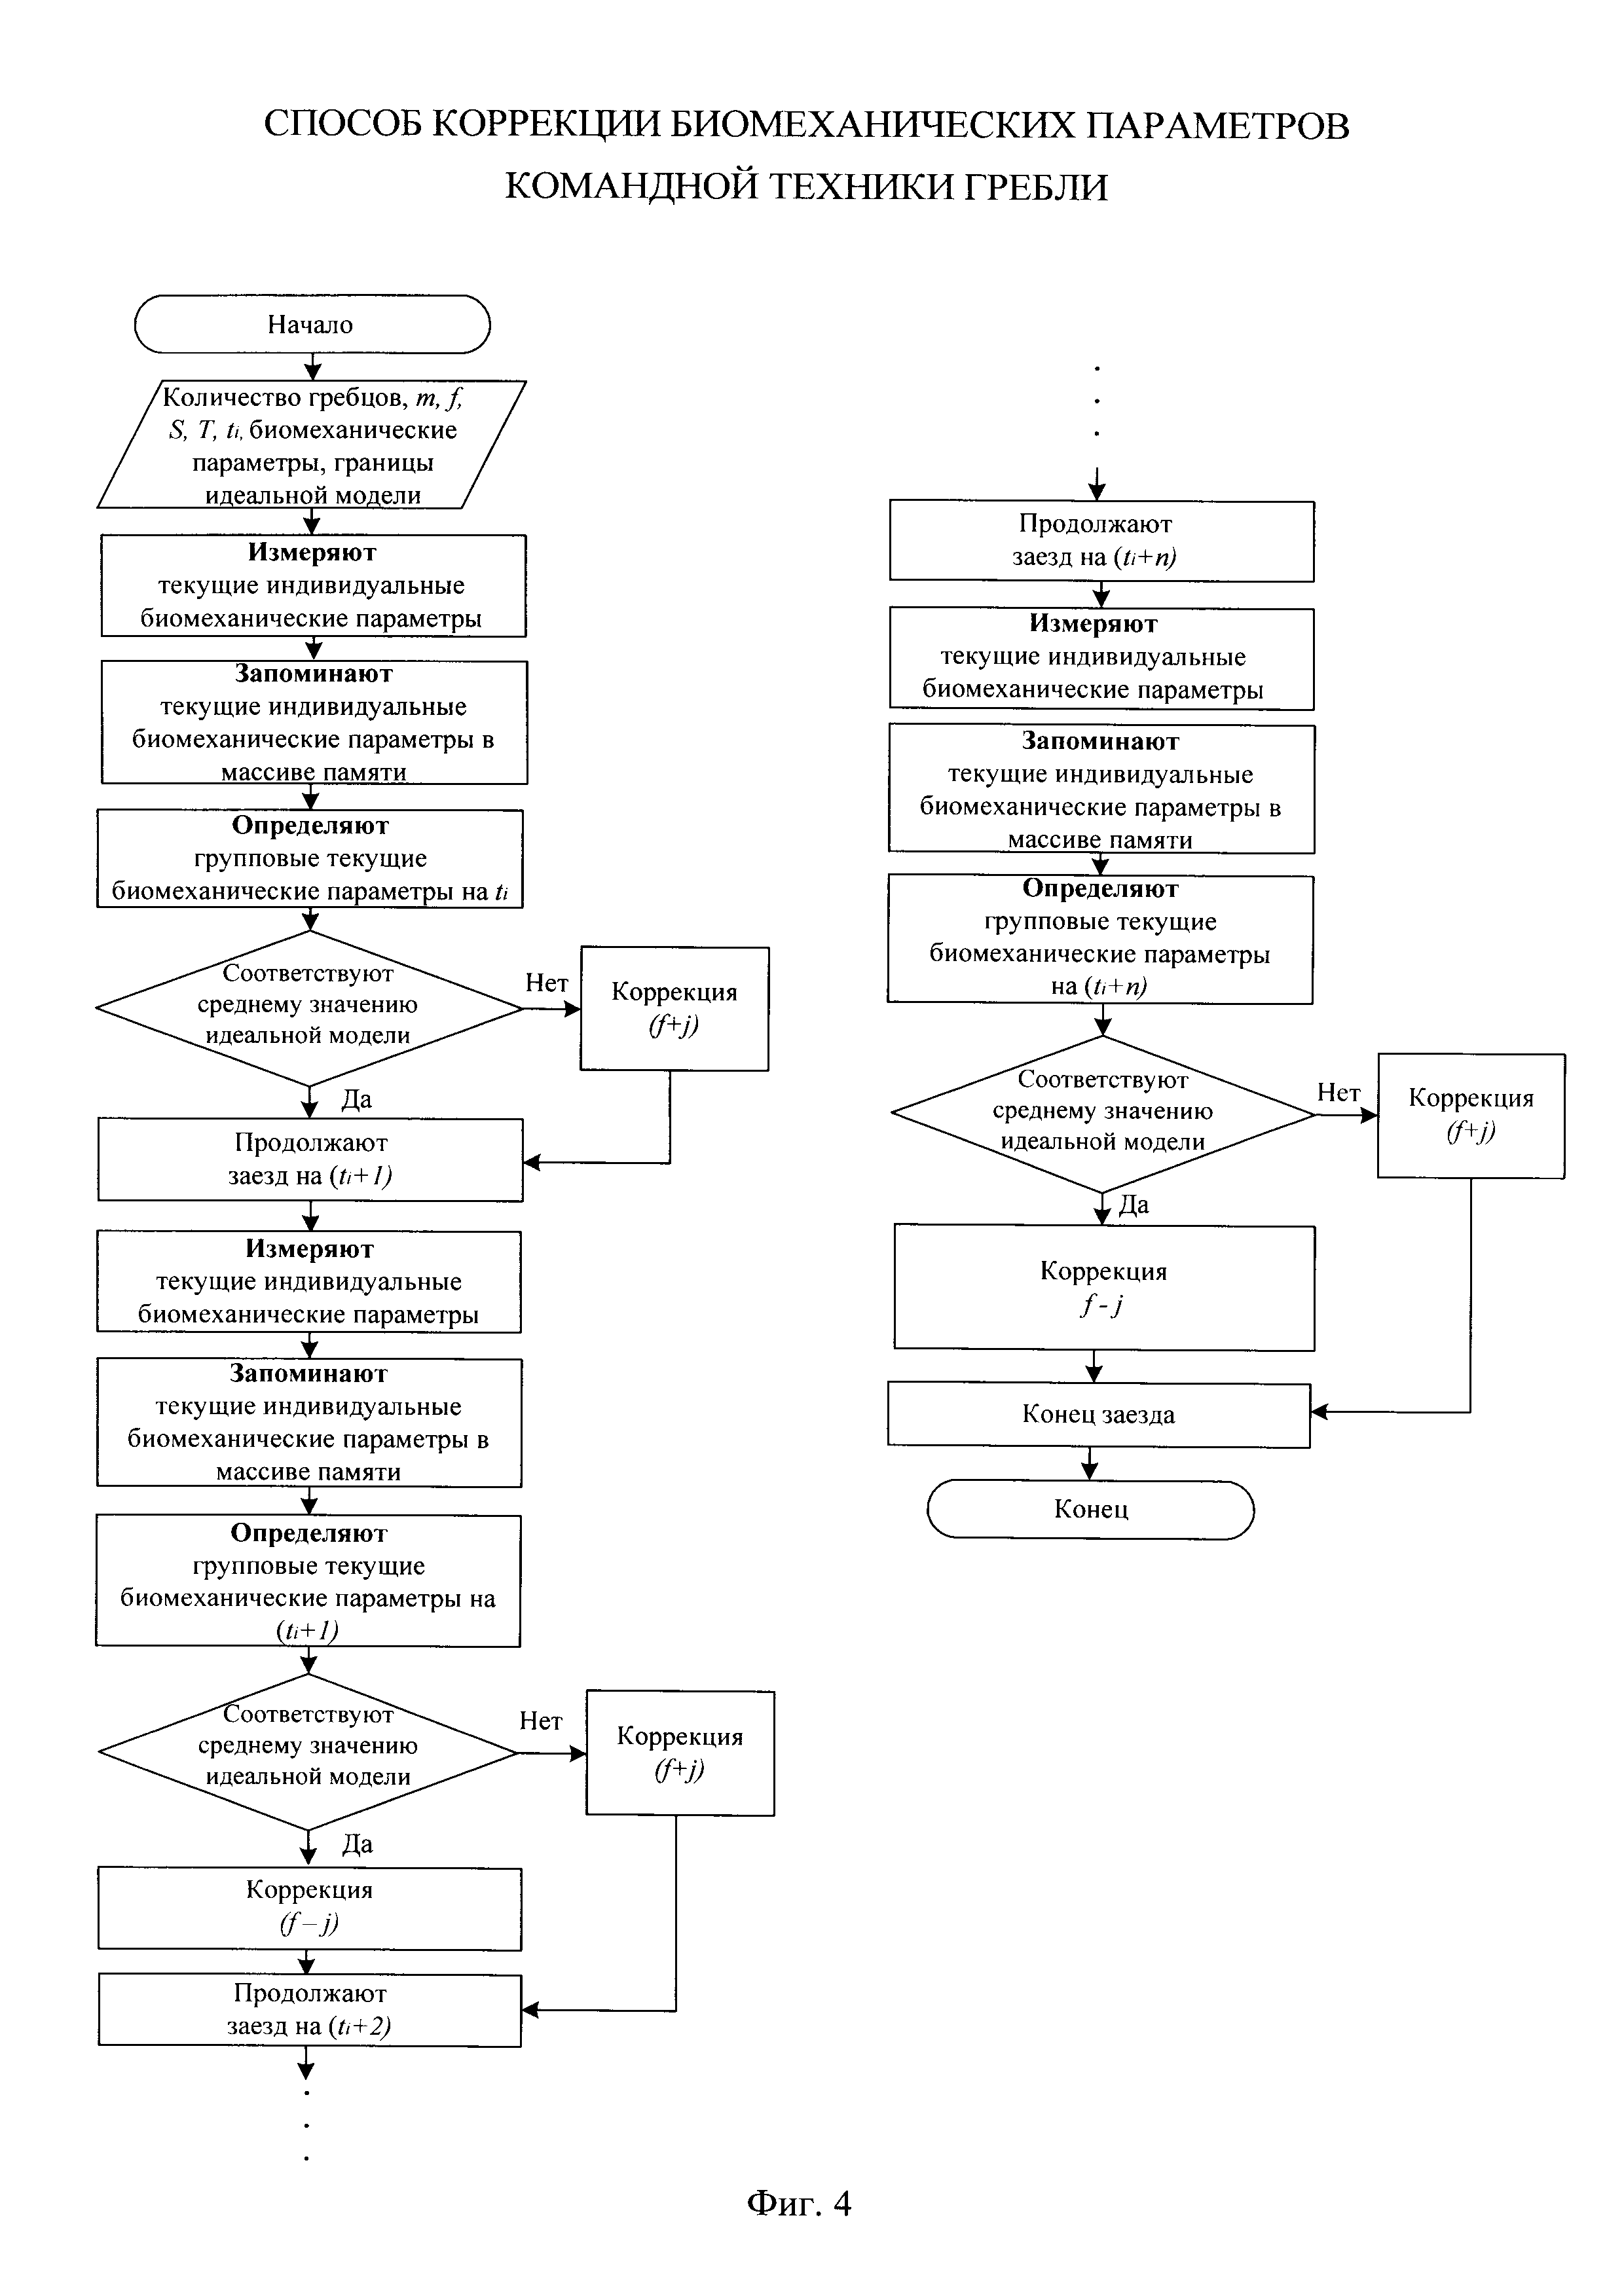 Способ коррекции биомеханических параметров командной техники гребли